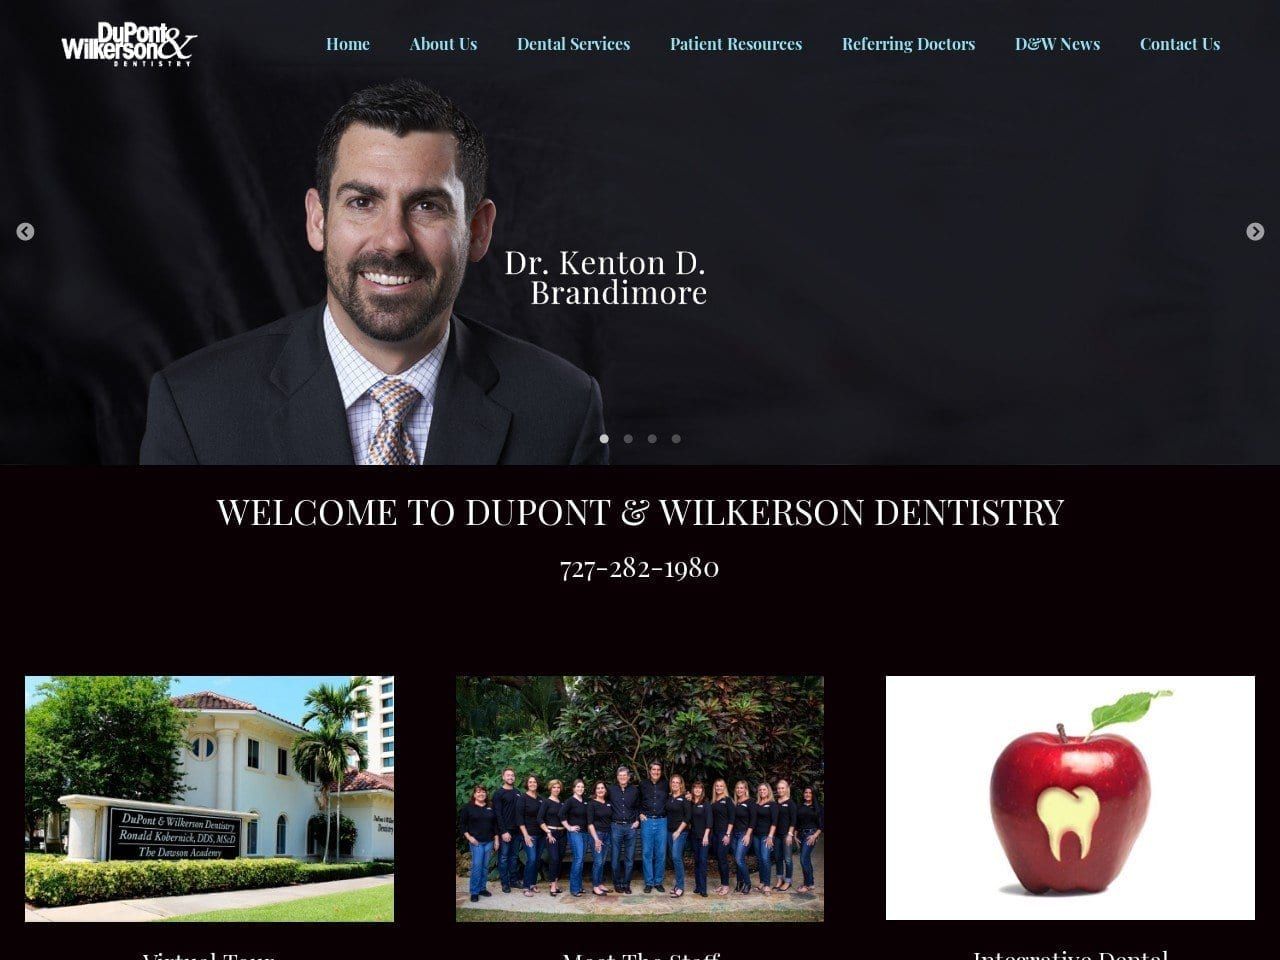 Dupont & Wilkerson Dentistry Dupont Glenn DDS Website Screenshot from dupontwilkerson.com